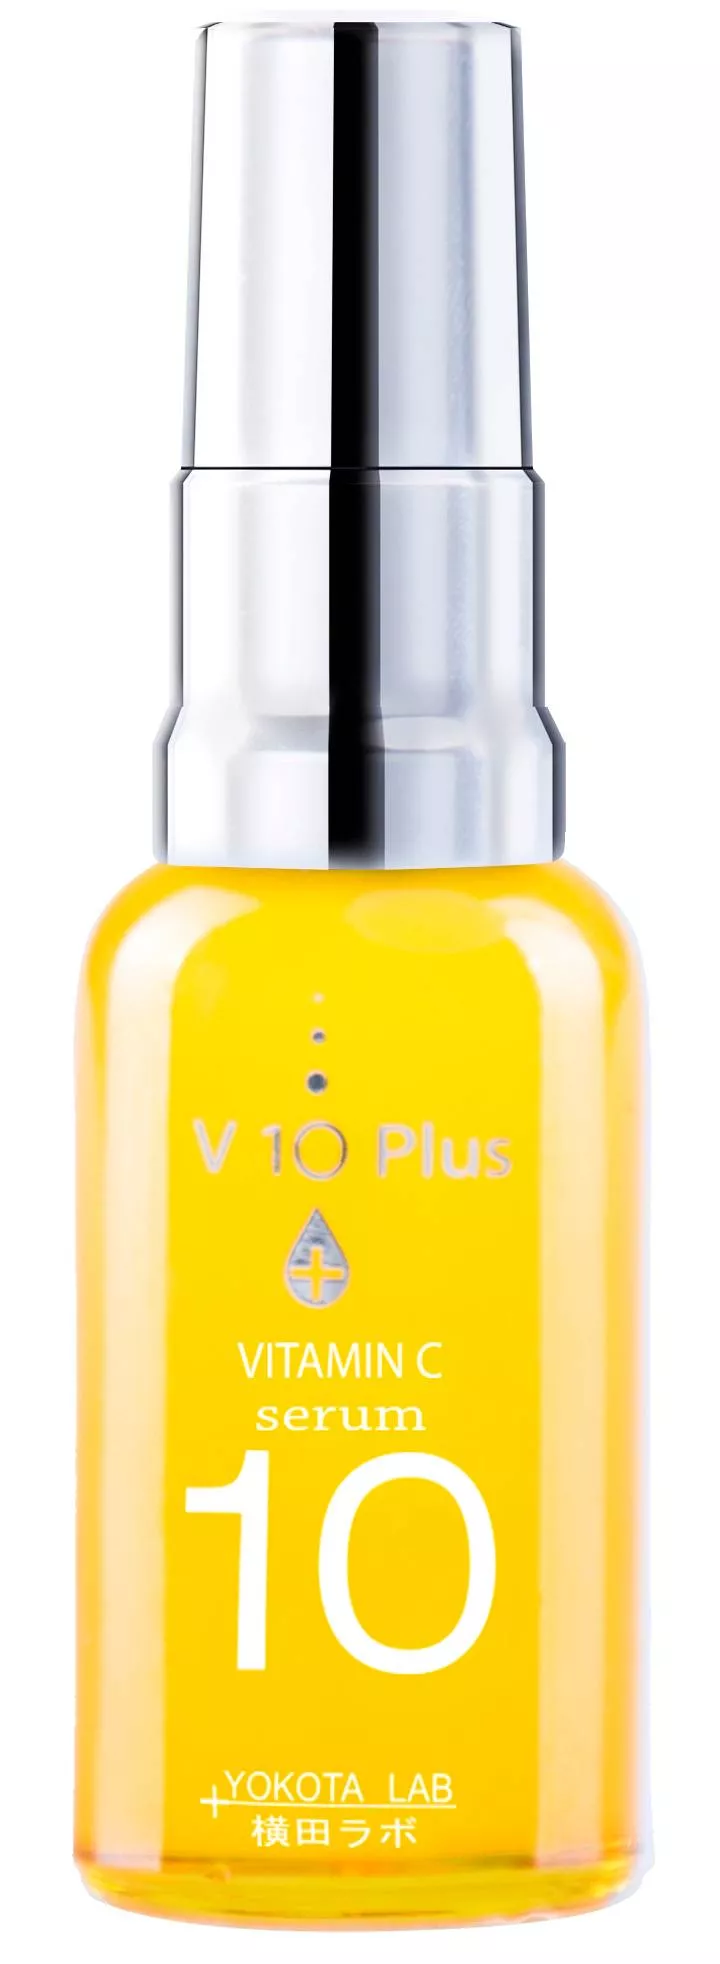  V10 Plus C-vitamiini -seerumi sopii erityisen hyvin finneihin taipuvaiselle iholle, 30 ml 80 e.